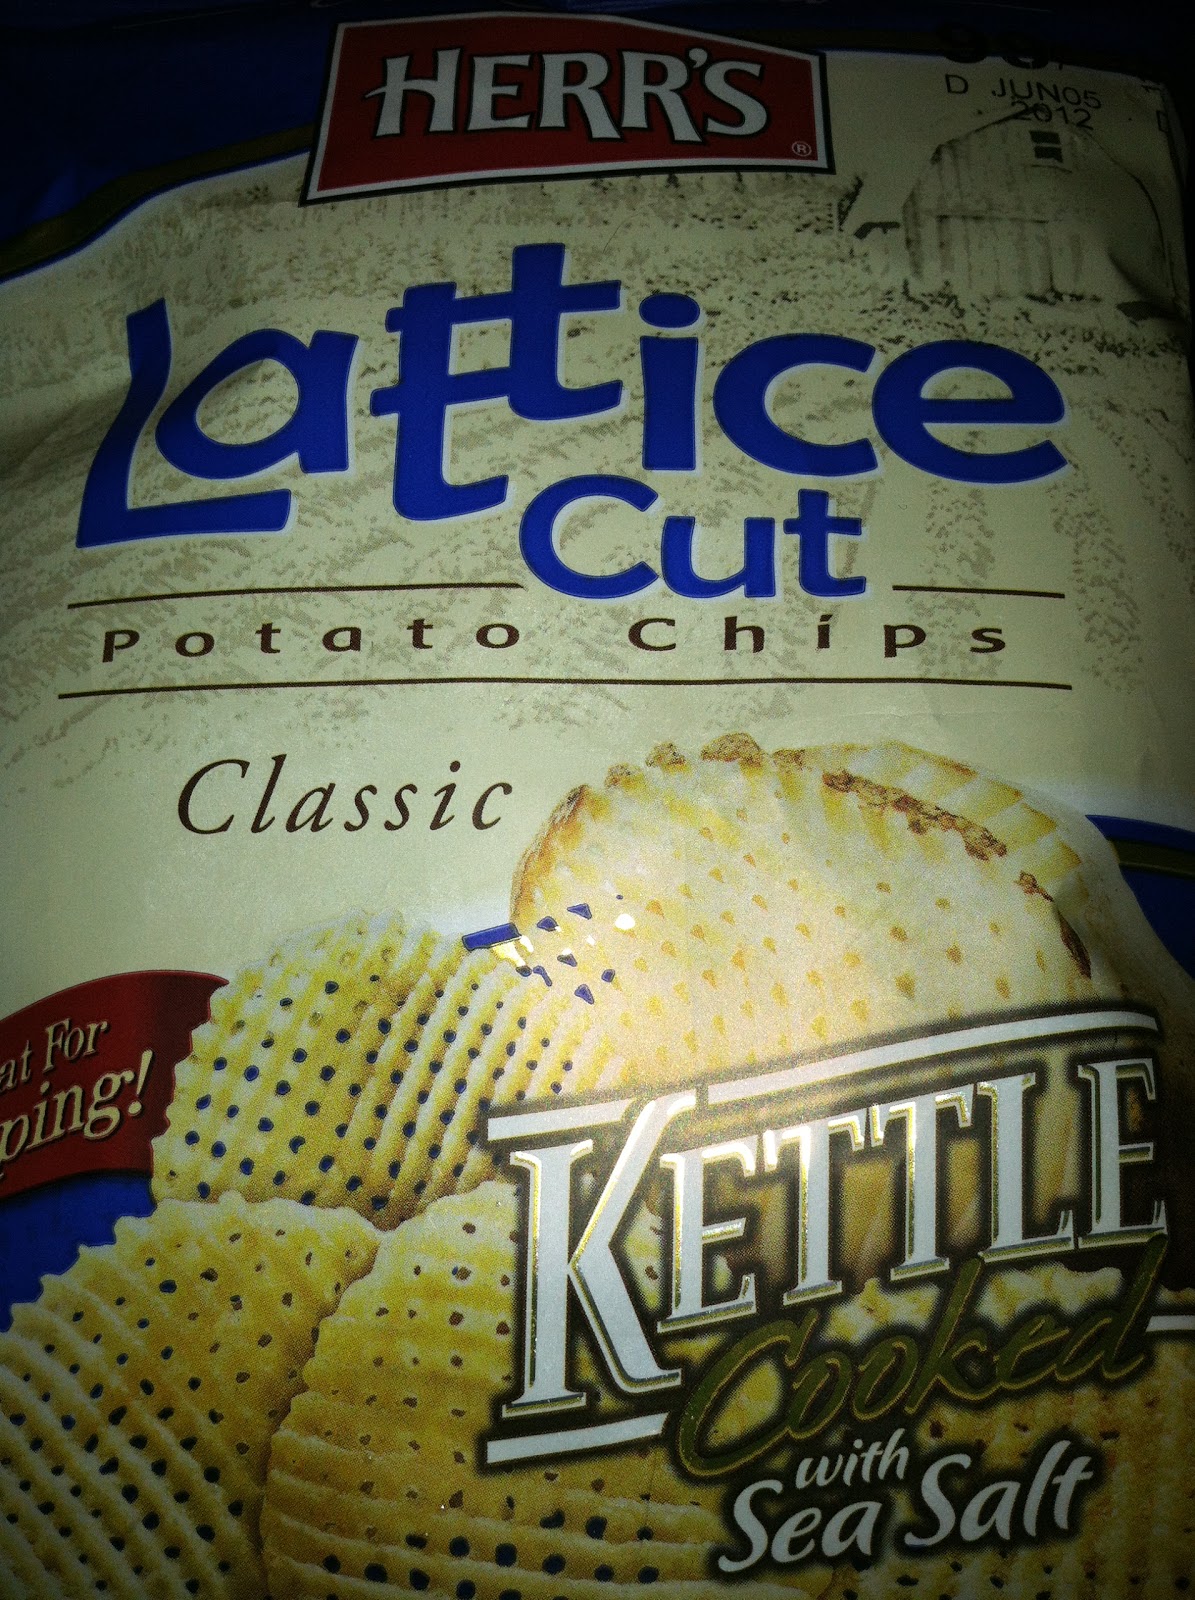 lattice chips us